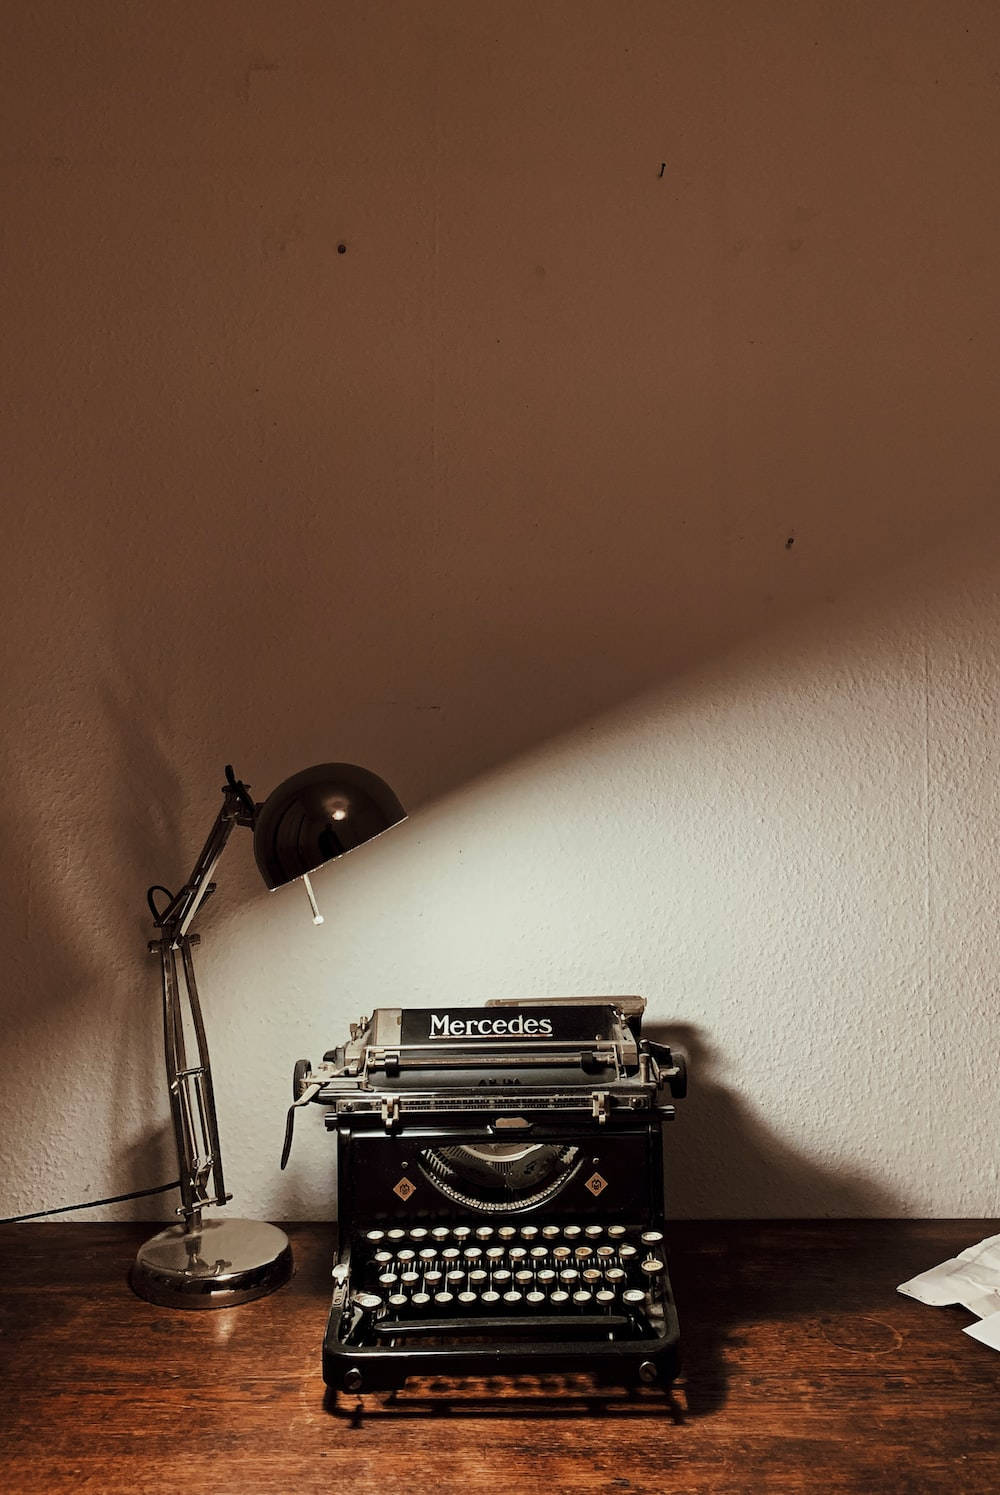 Aesthetic Brown Old Typewriter